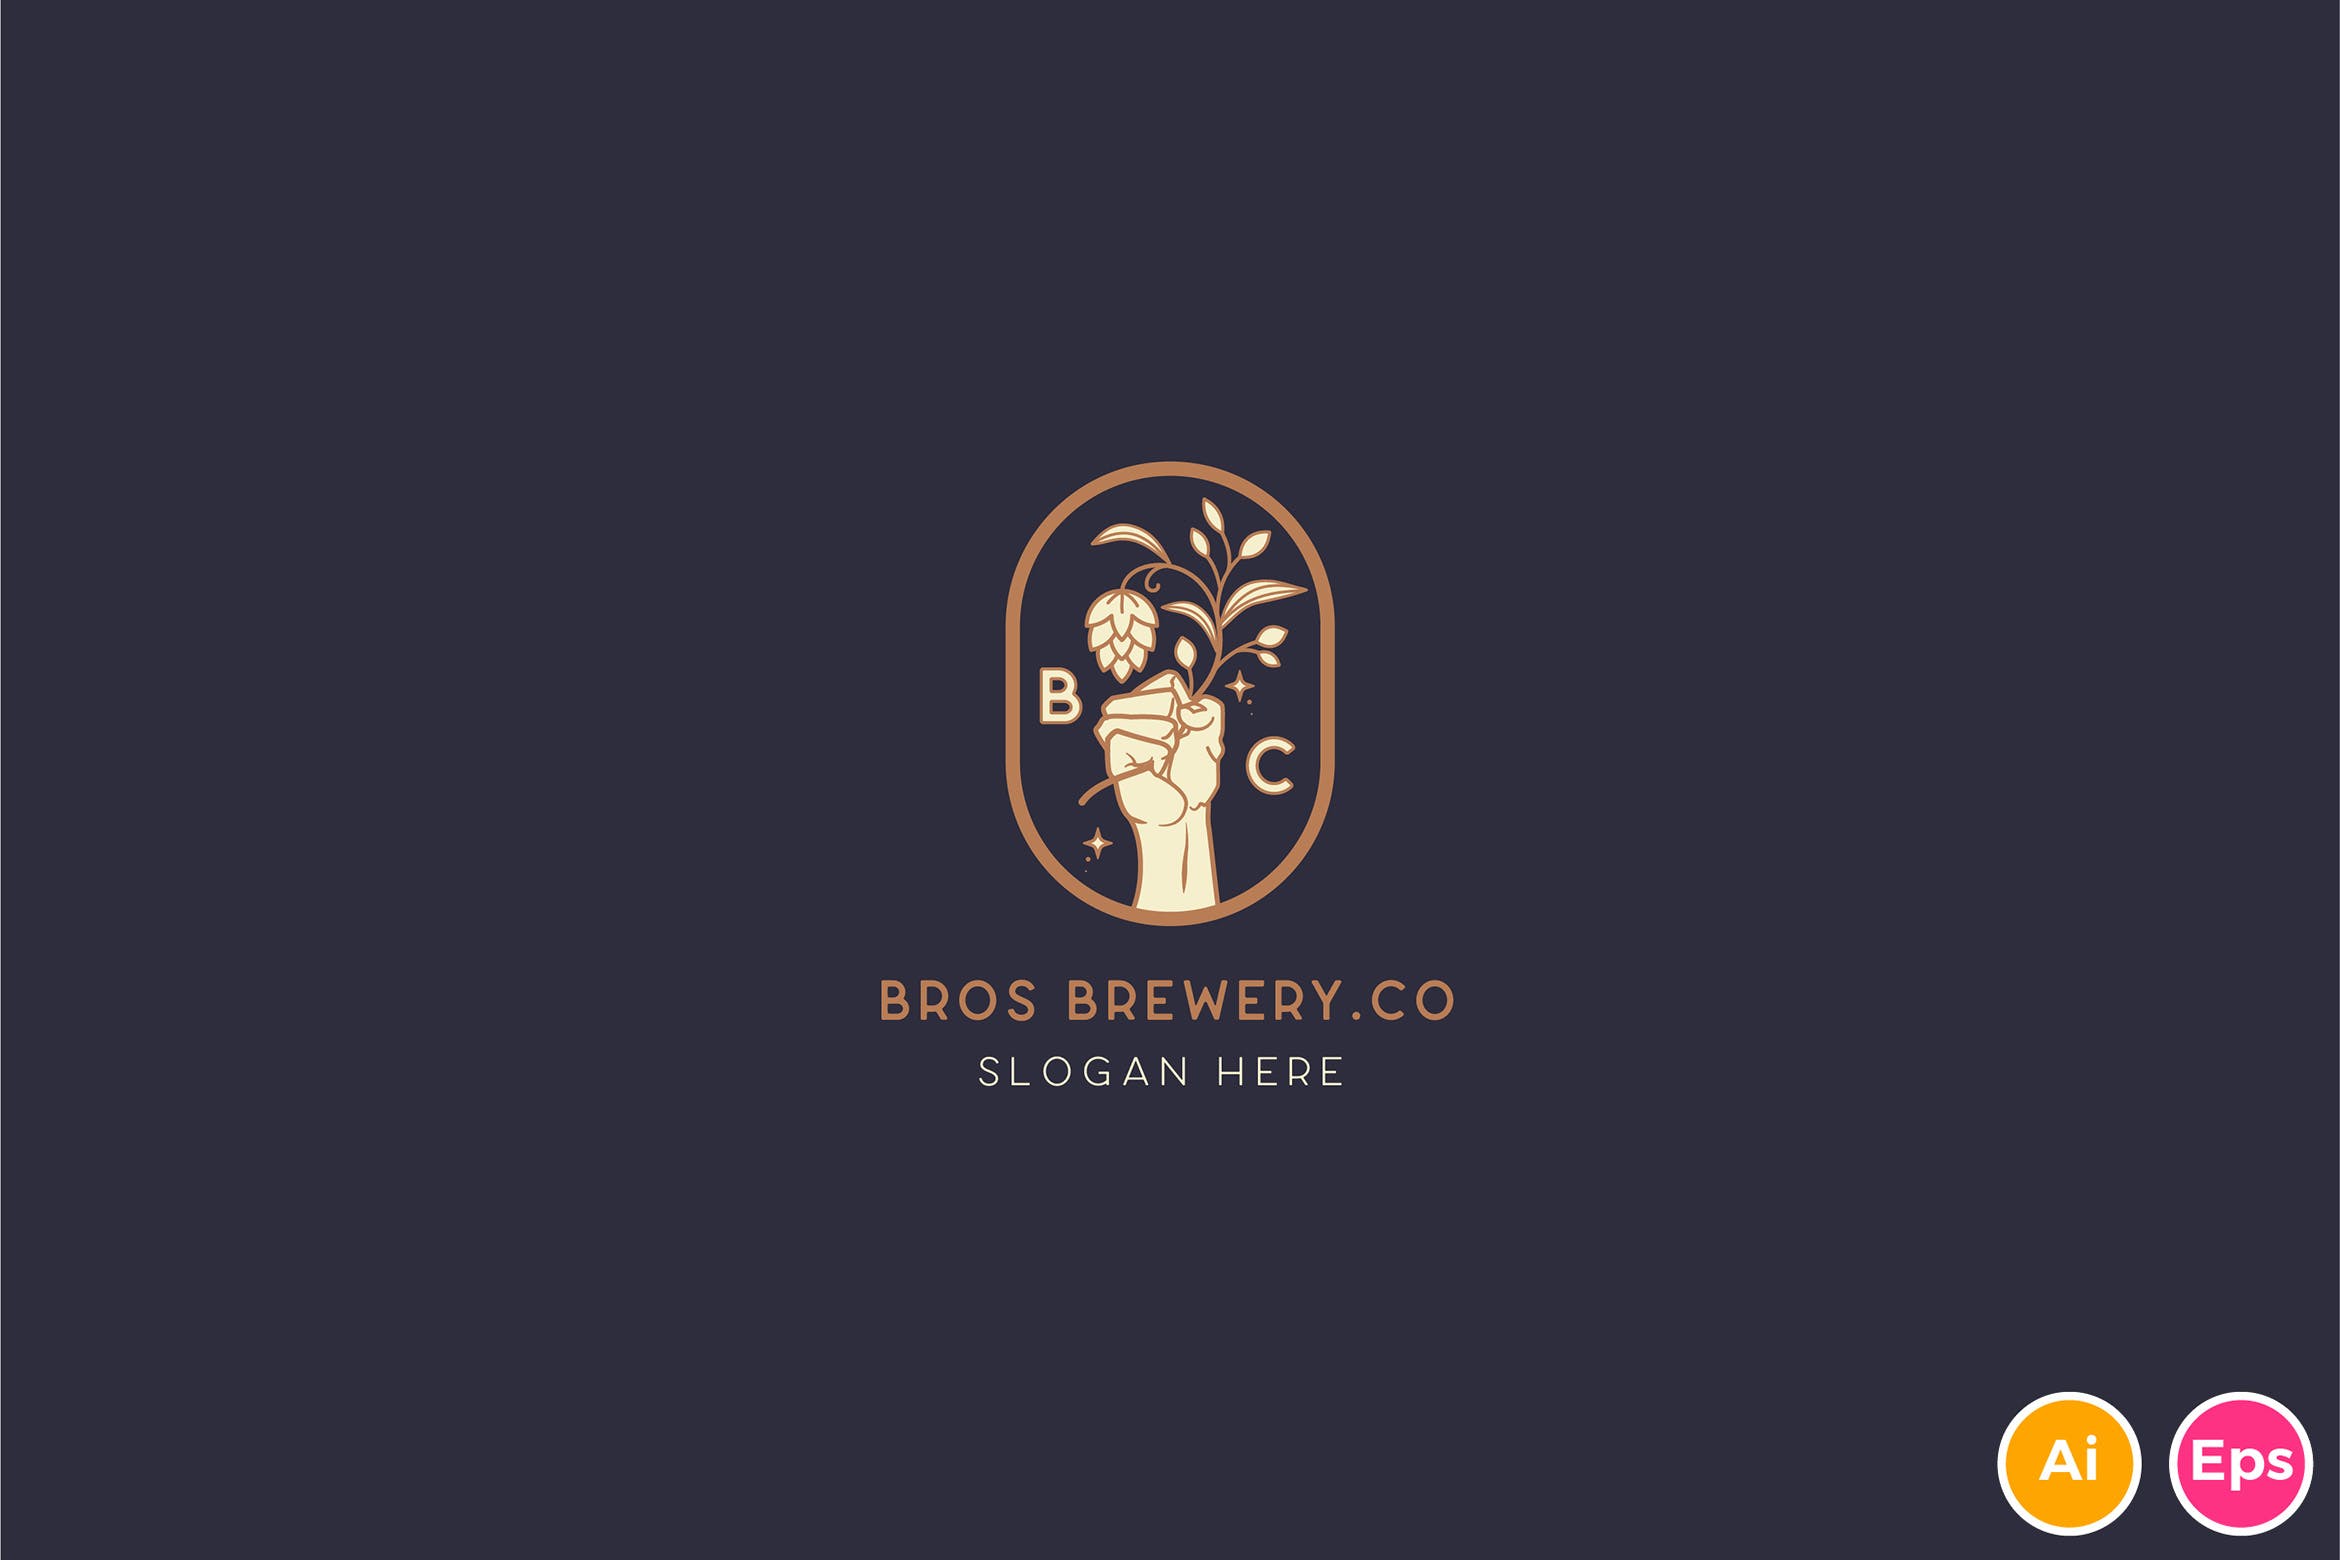 咖啡/啤酒品牌Logo设计第一素材精选模板 Brewery Brotherhood cafe beer Logo Template插图